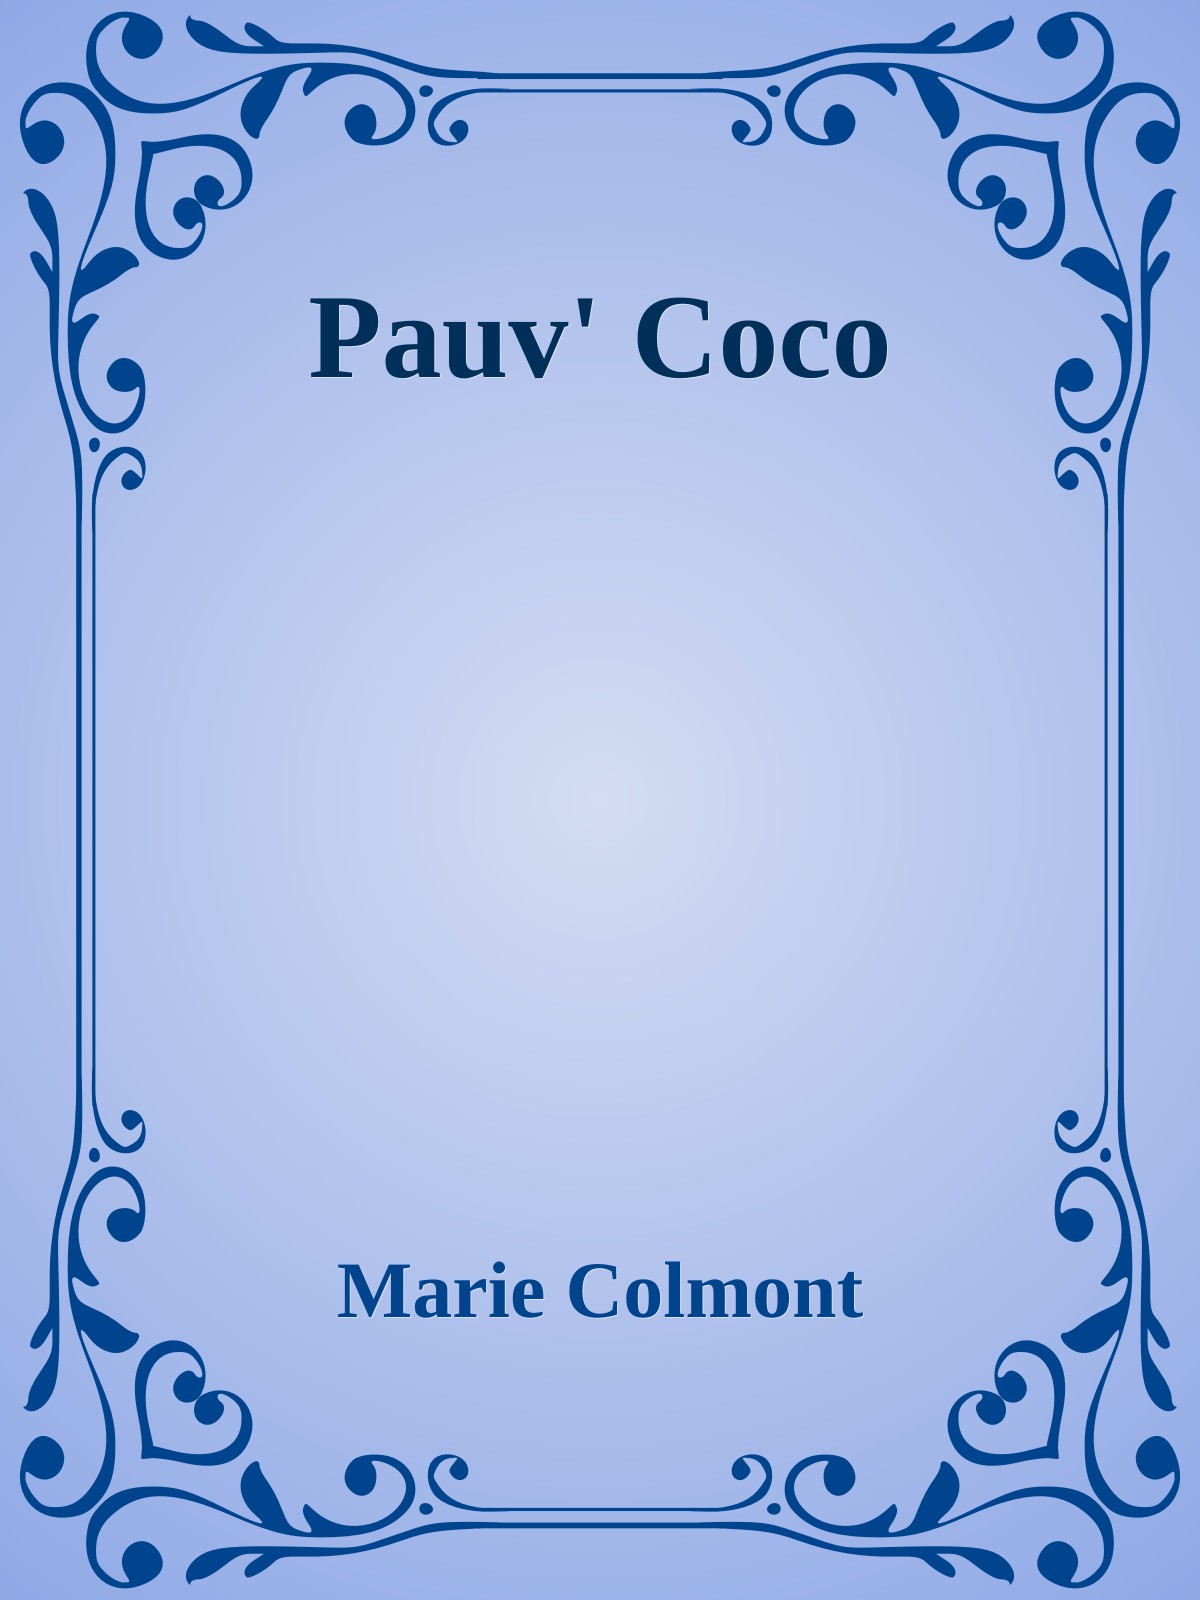 Pauv' Coco